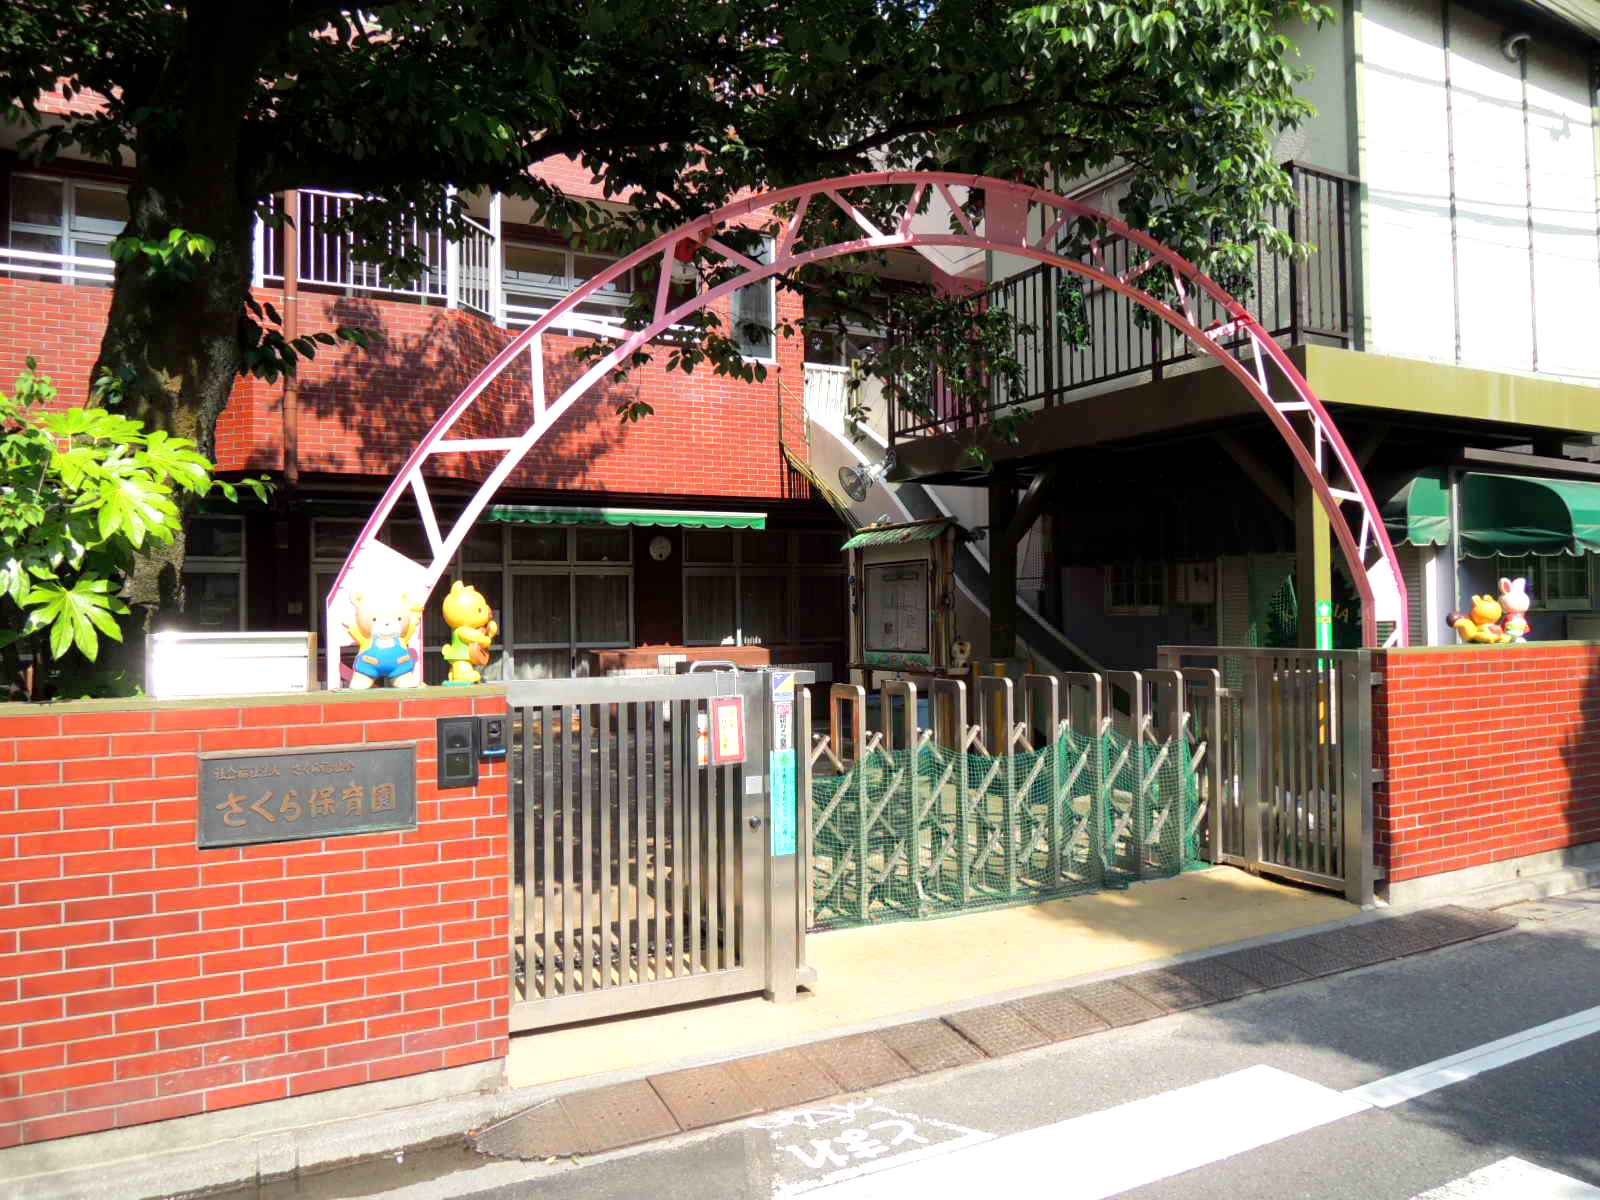 kindergarten ・ Nursery. Sakura nursery school (kindergarten ・ 399m to the nursery)